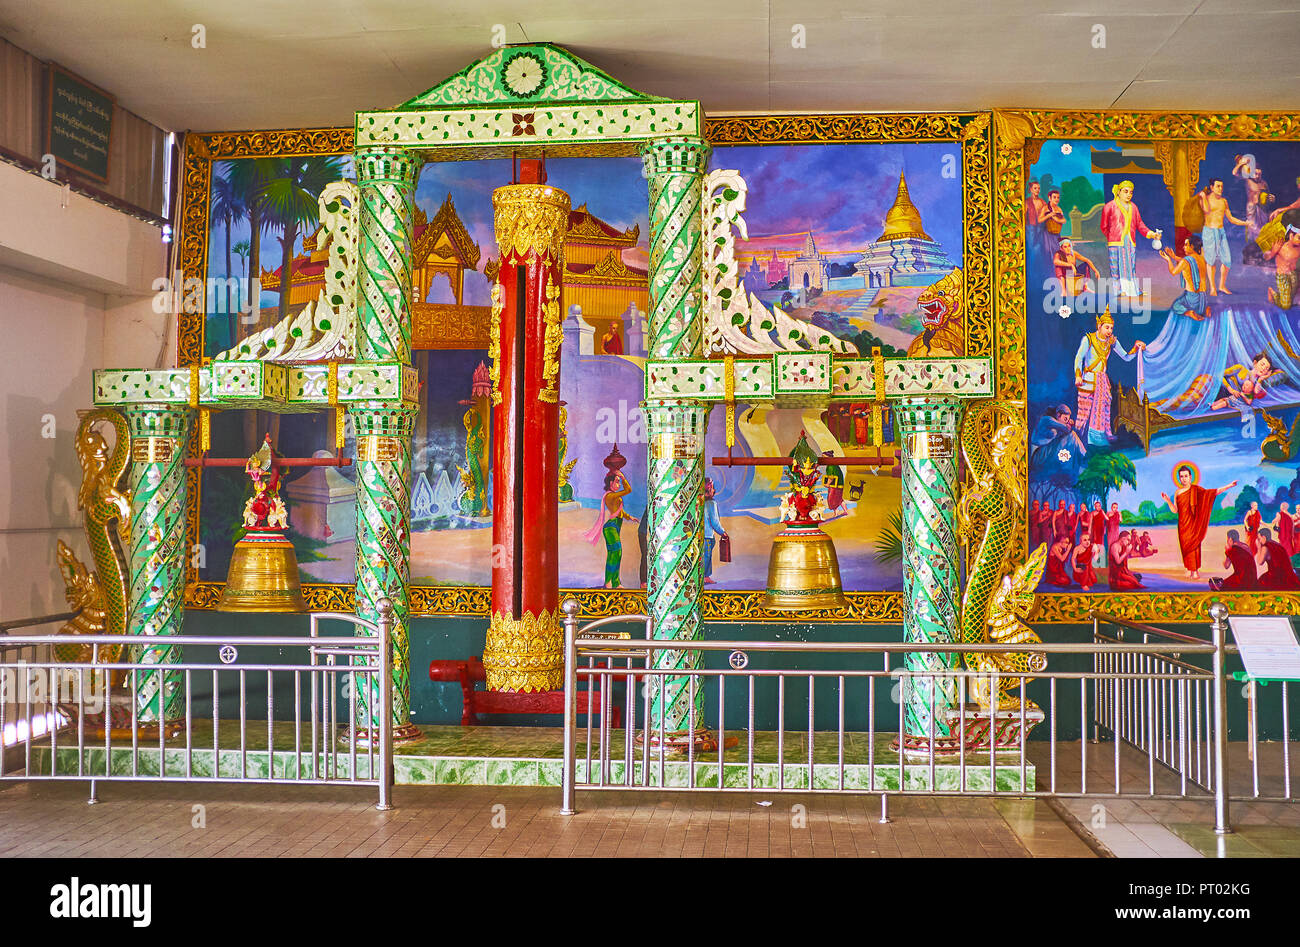 YANGON, MYANMAR - 27. FEBRUAR 2018: Die Glocken, mit herrlichem Spiegel Muster an der Wand mit bunten Wandmalereien in Chaukhtatgyi Buddha Tempel dekoriert, o Stockfoto